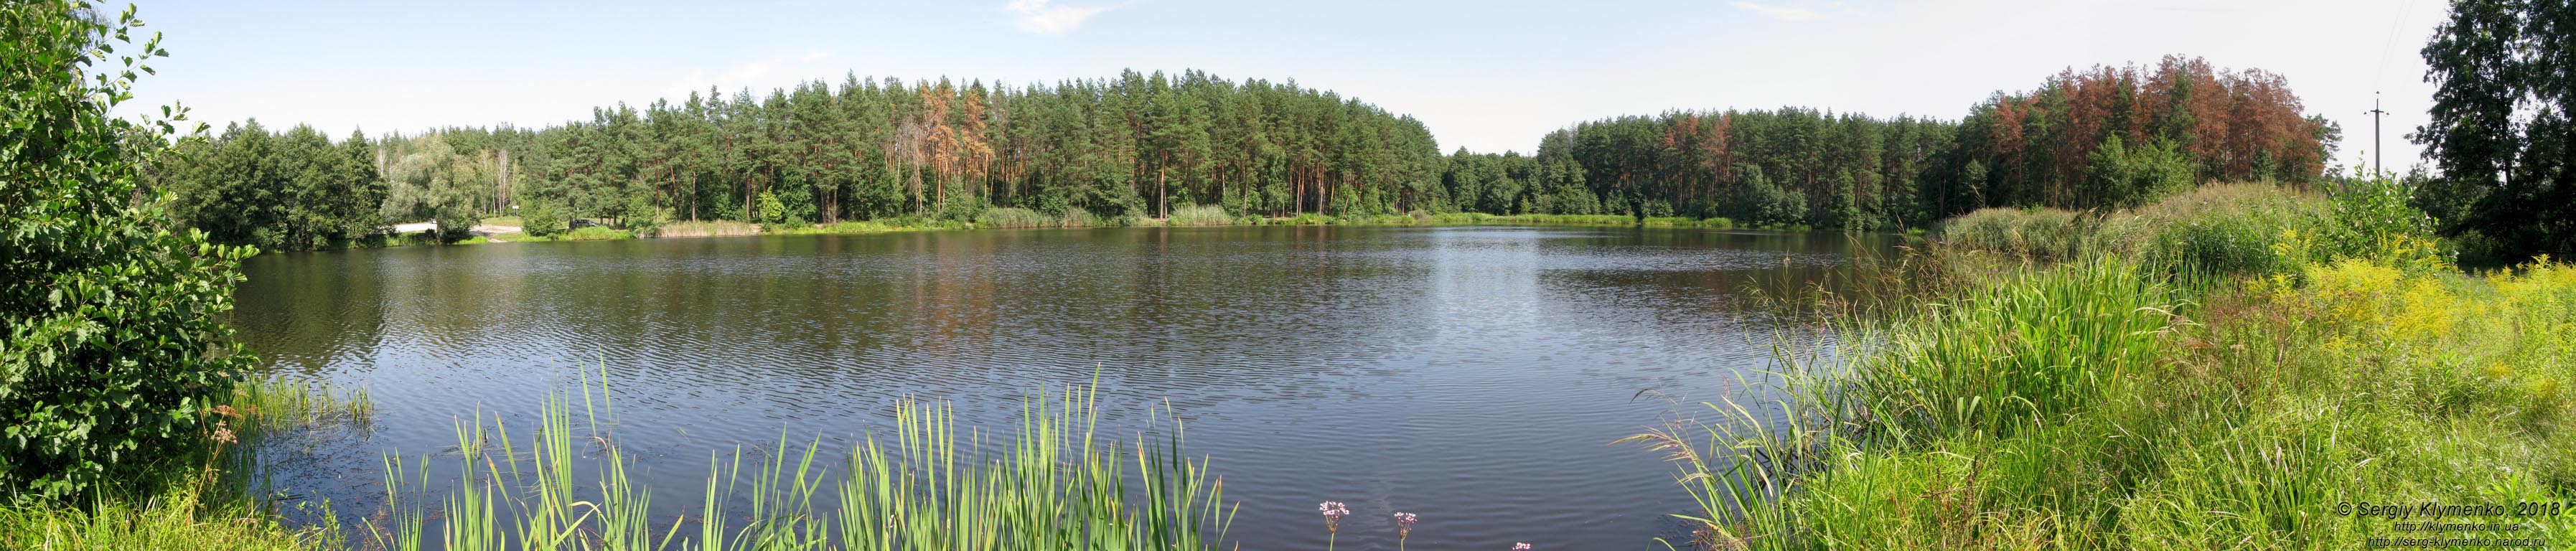 Коростышев (Житомирская область). Фото. Коростышевское озеро («Первое озеро»). Панорама ~180° (50°18'59"N, 29°05'02"E).